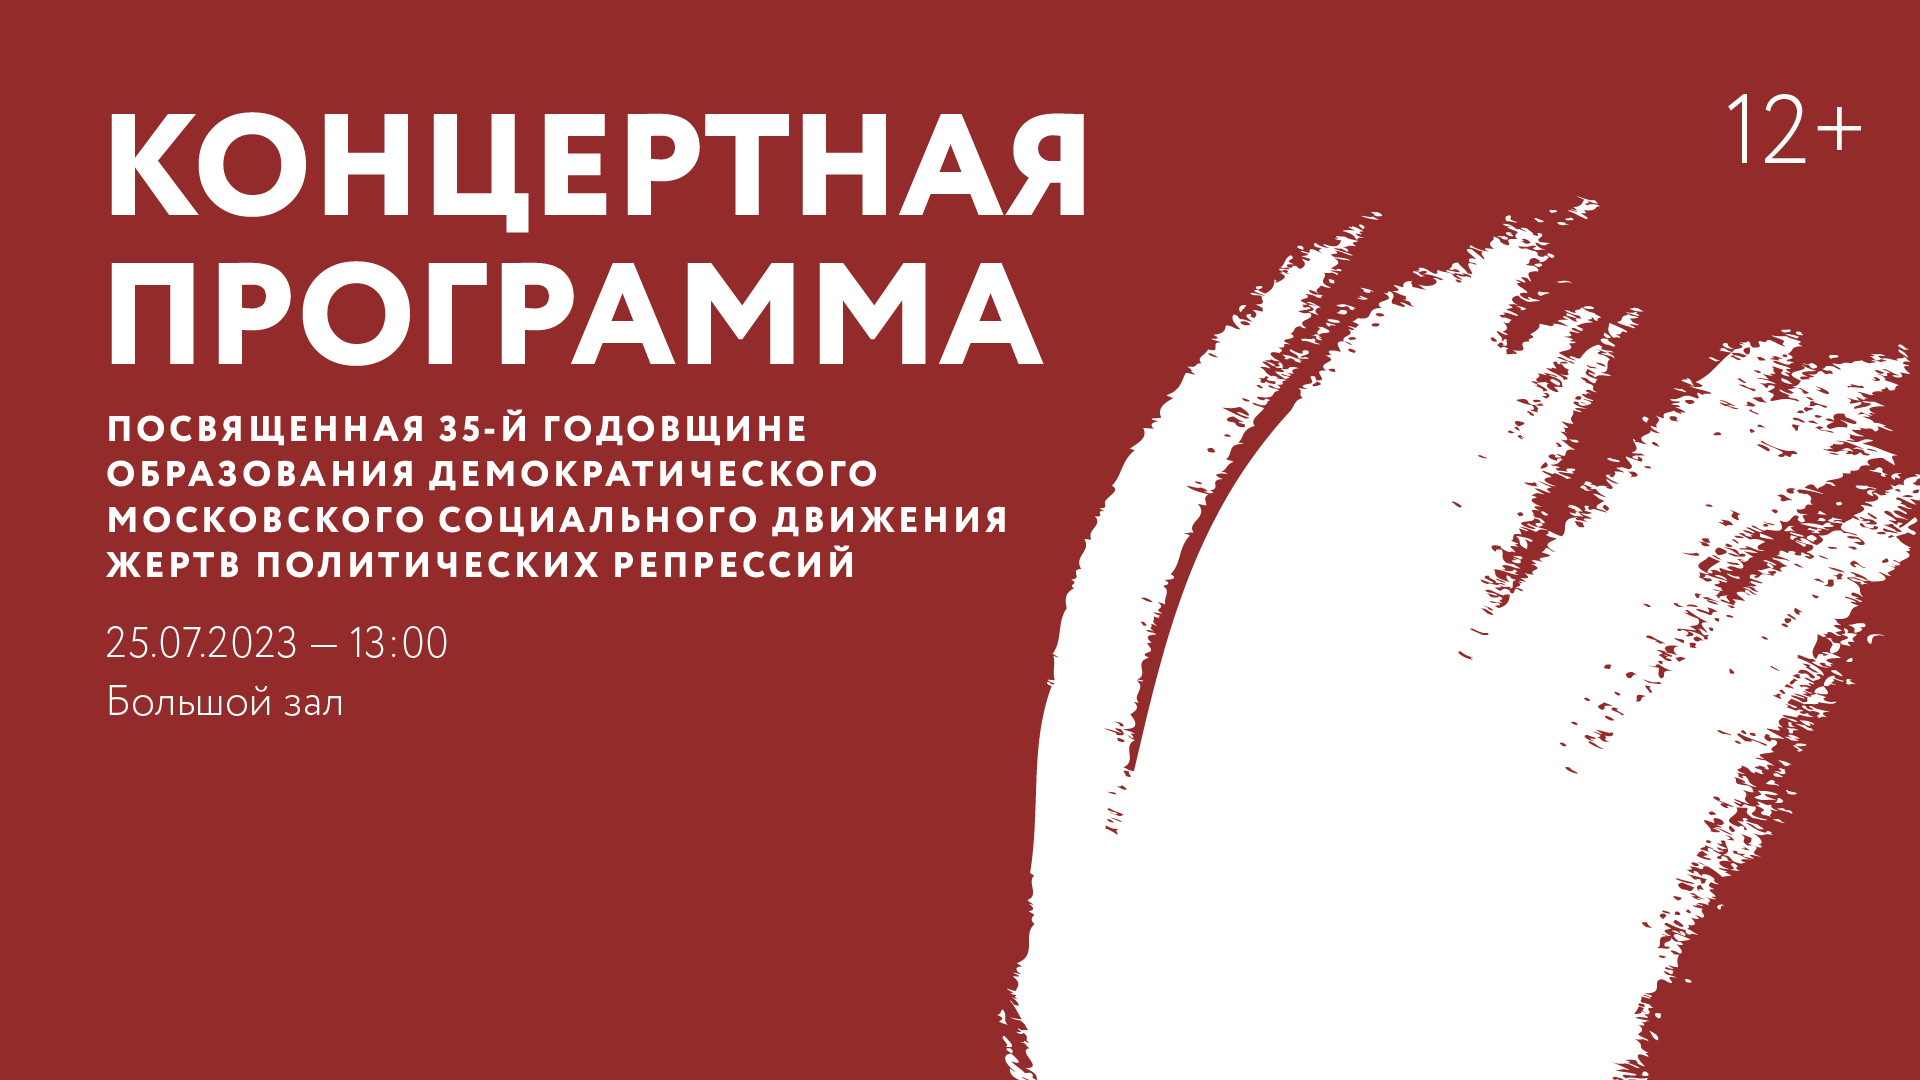 Концертная программа, посвященная 35-й годовщине образования Демократического Московского социального движения жертв политических репрессий